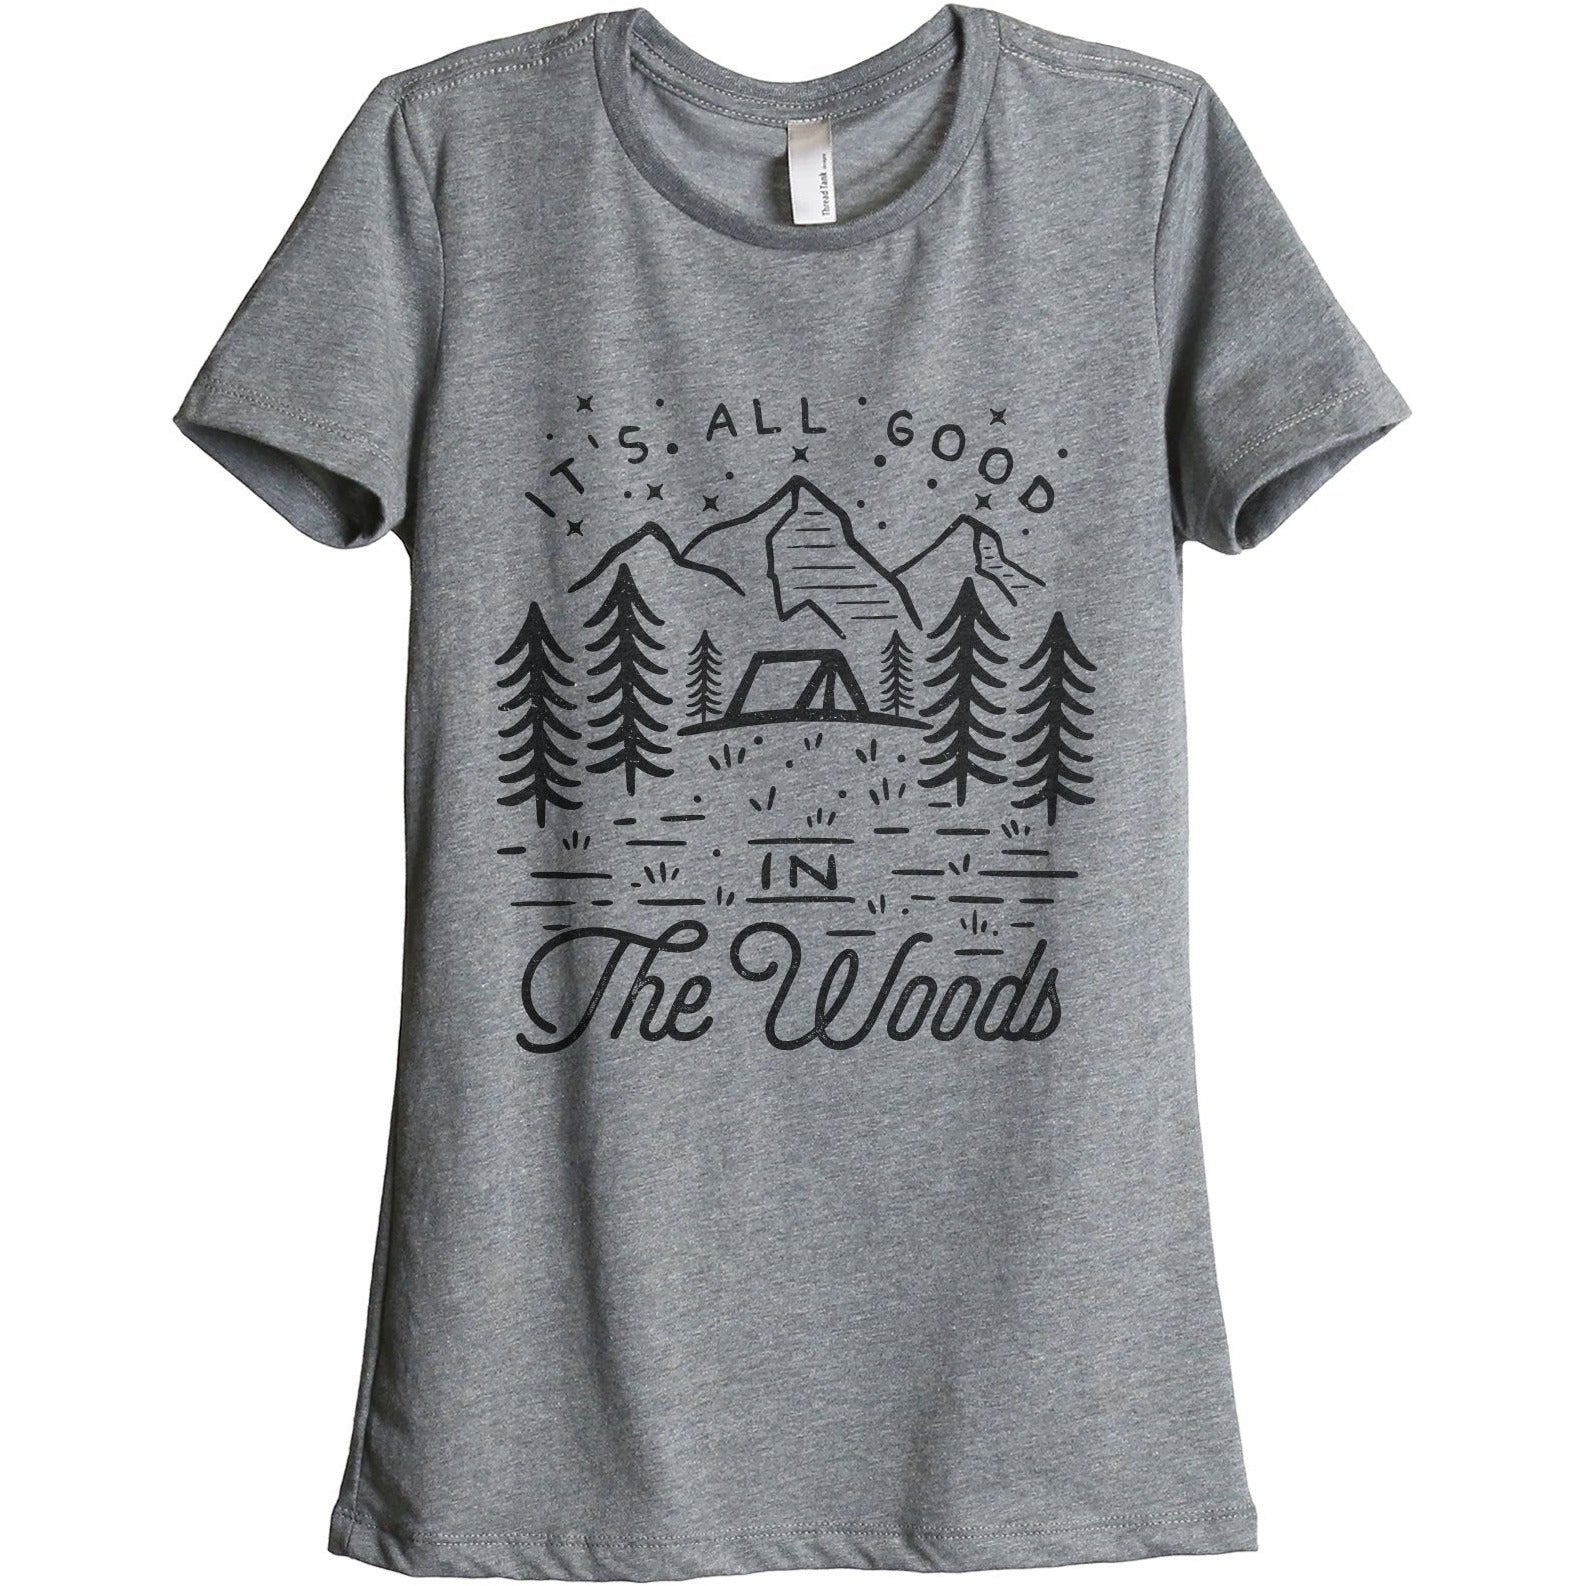 It's All Good Women's T-Shirt